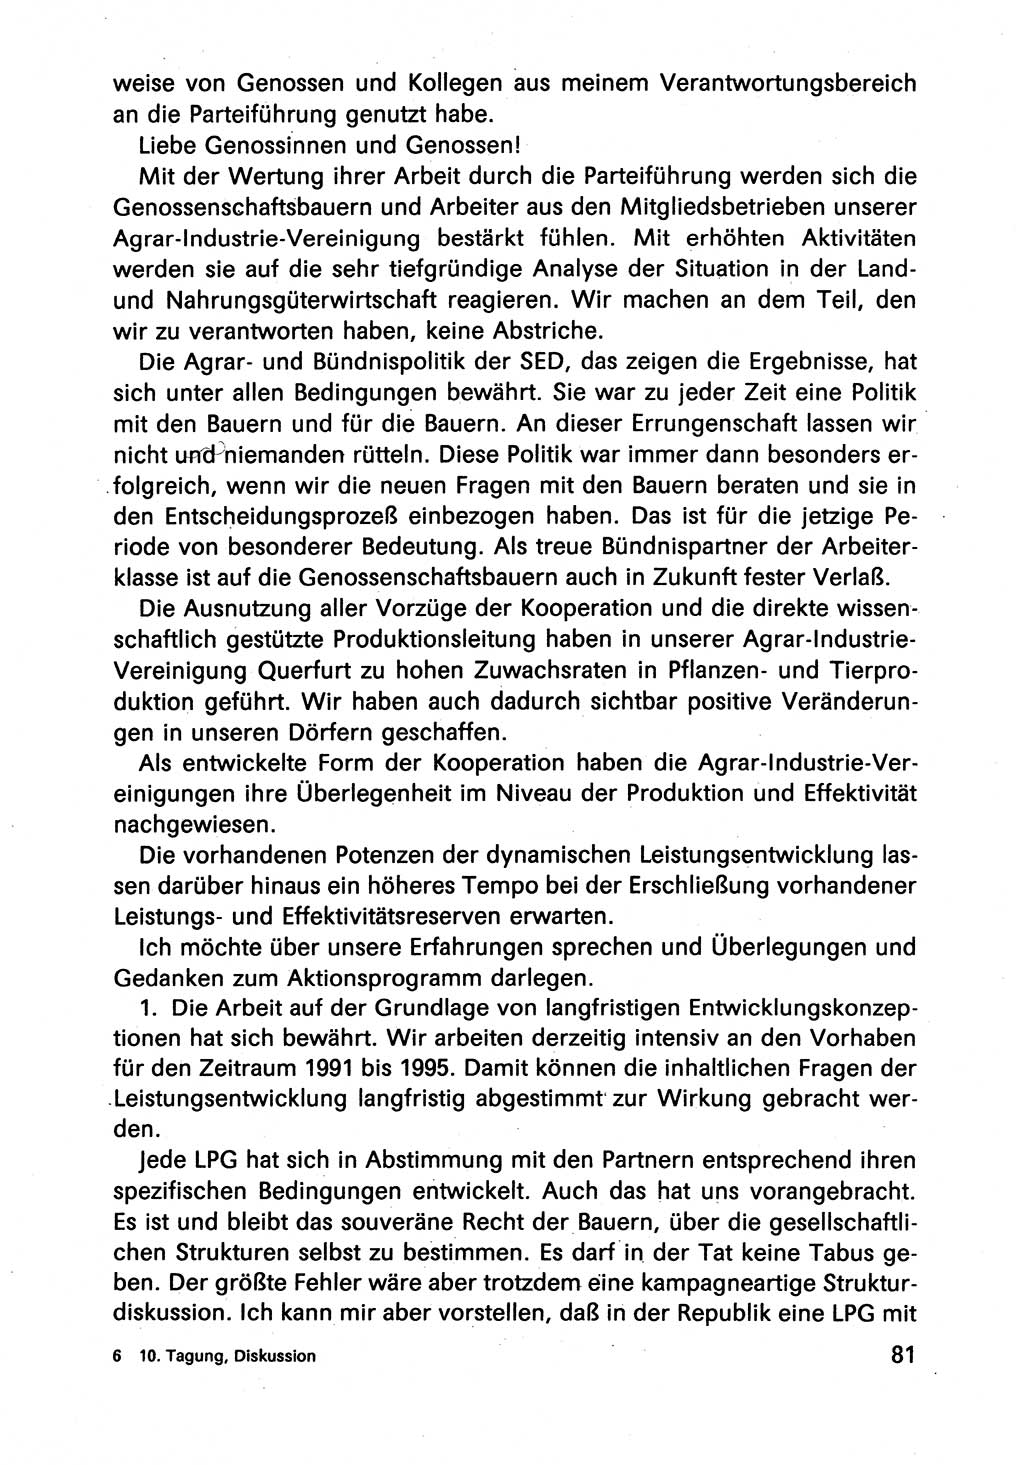 Diskussionsbeiträge, 10. Tagung des ZK (Zentralkomitee) der SED (Sozialistische Einheitspartei Deutschlands) [Deutsche Demokratische Republik (DDR)] 1989, Seite 81 (Disk.-Beitr. 10. Tg. ZK SED DDR 1989, S. 81)